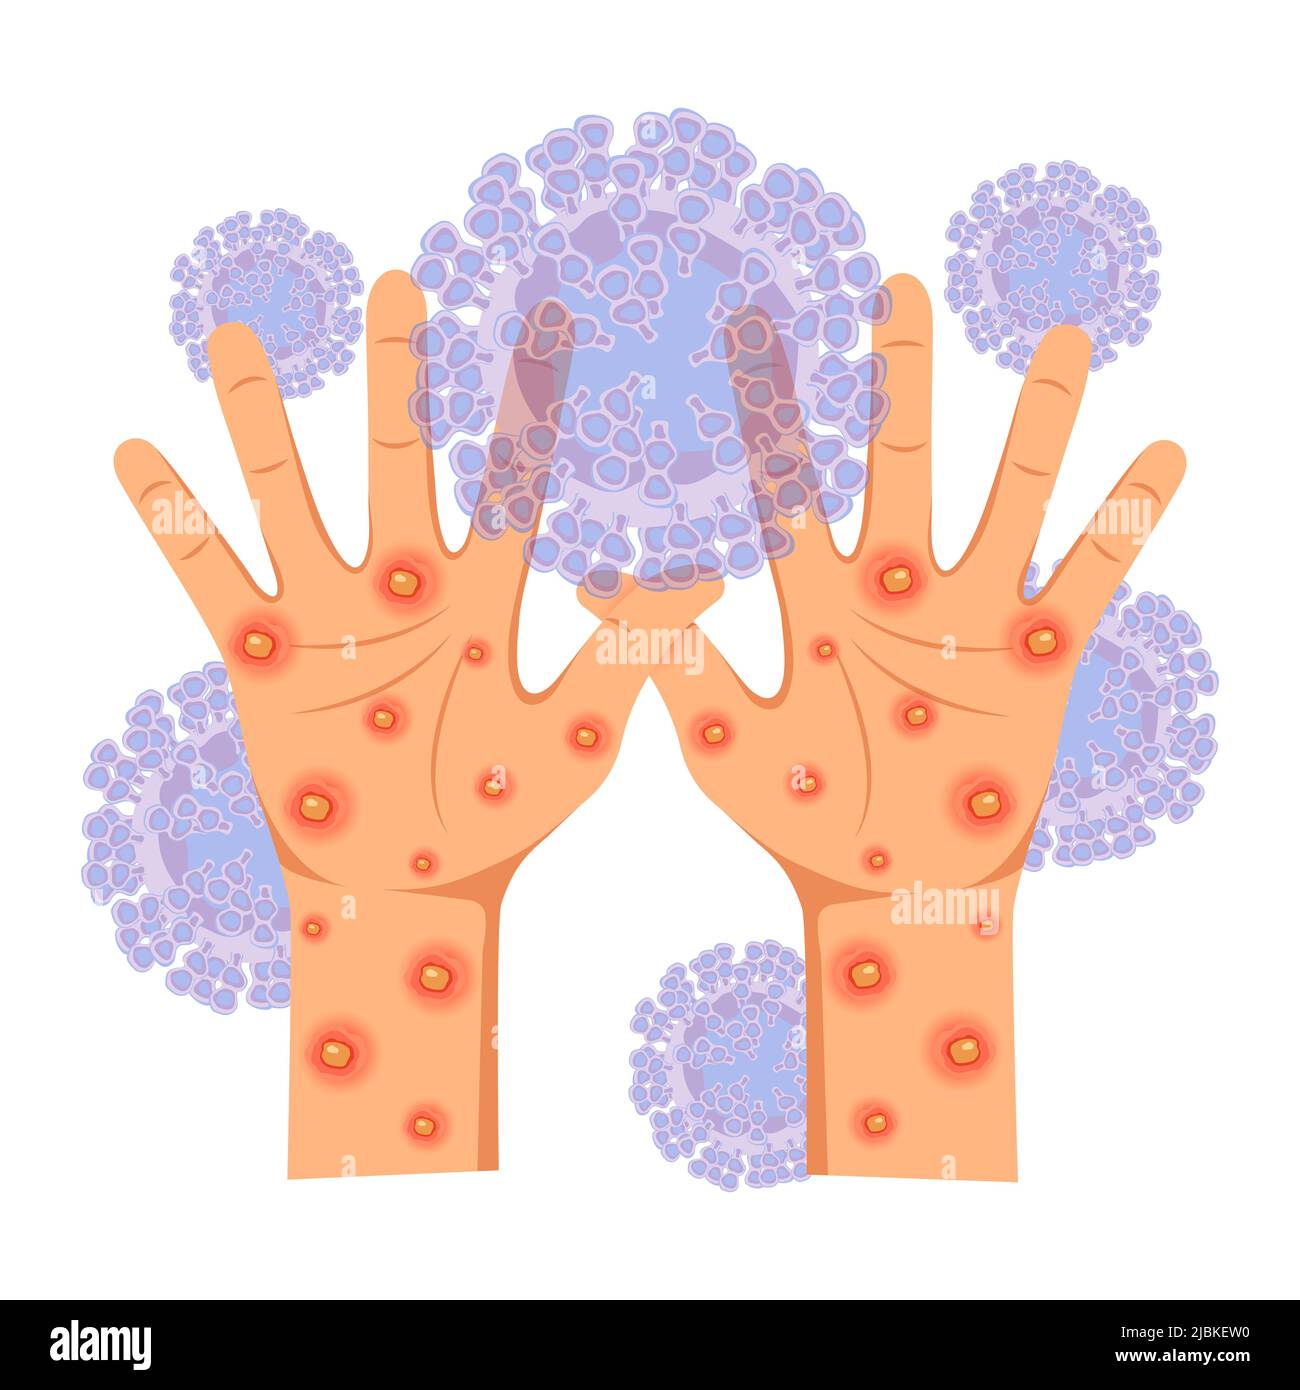 Virale Infektionskrankheit Monkeypox-Virus. Menschliche Hände, die von einem Hautausschlag betroffen sind, bedeckt mit eitrigen Geschwüren und Pickel. Vektorgrafik. Stock Vektor